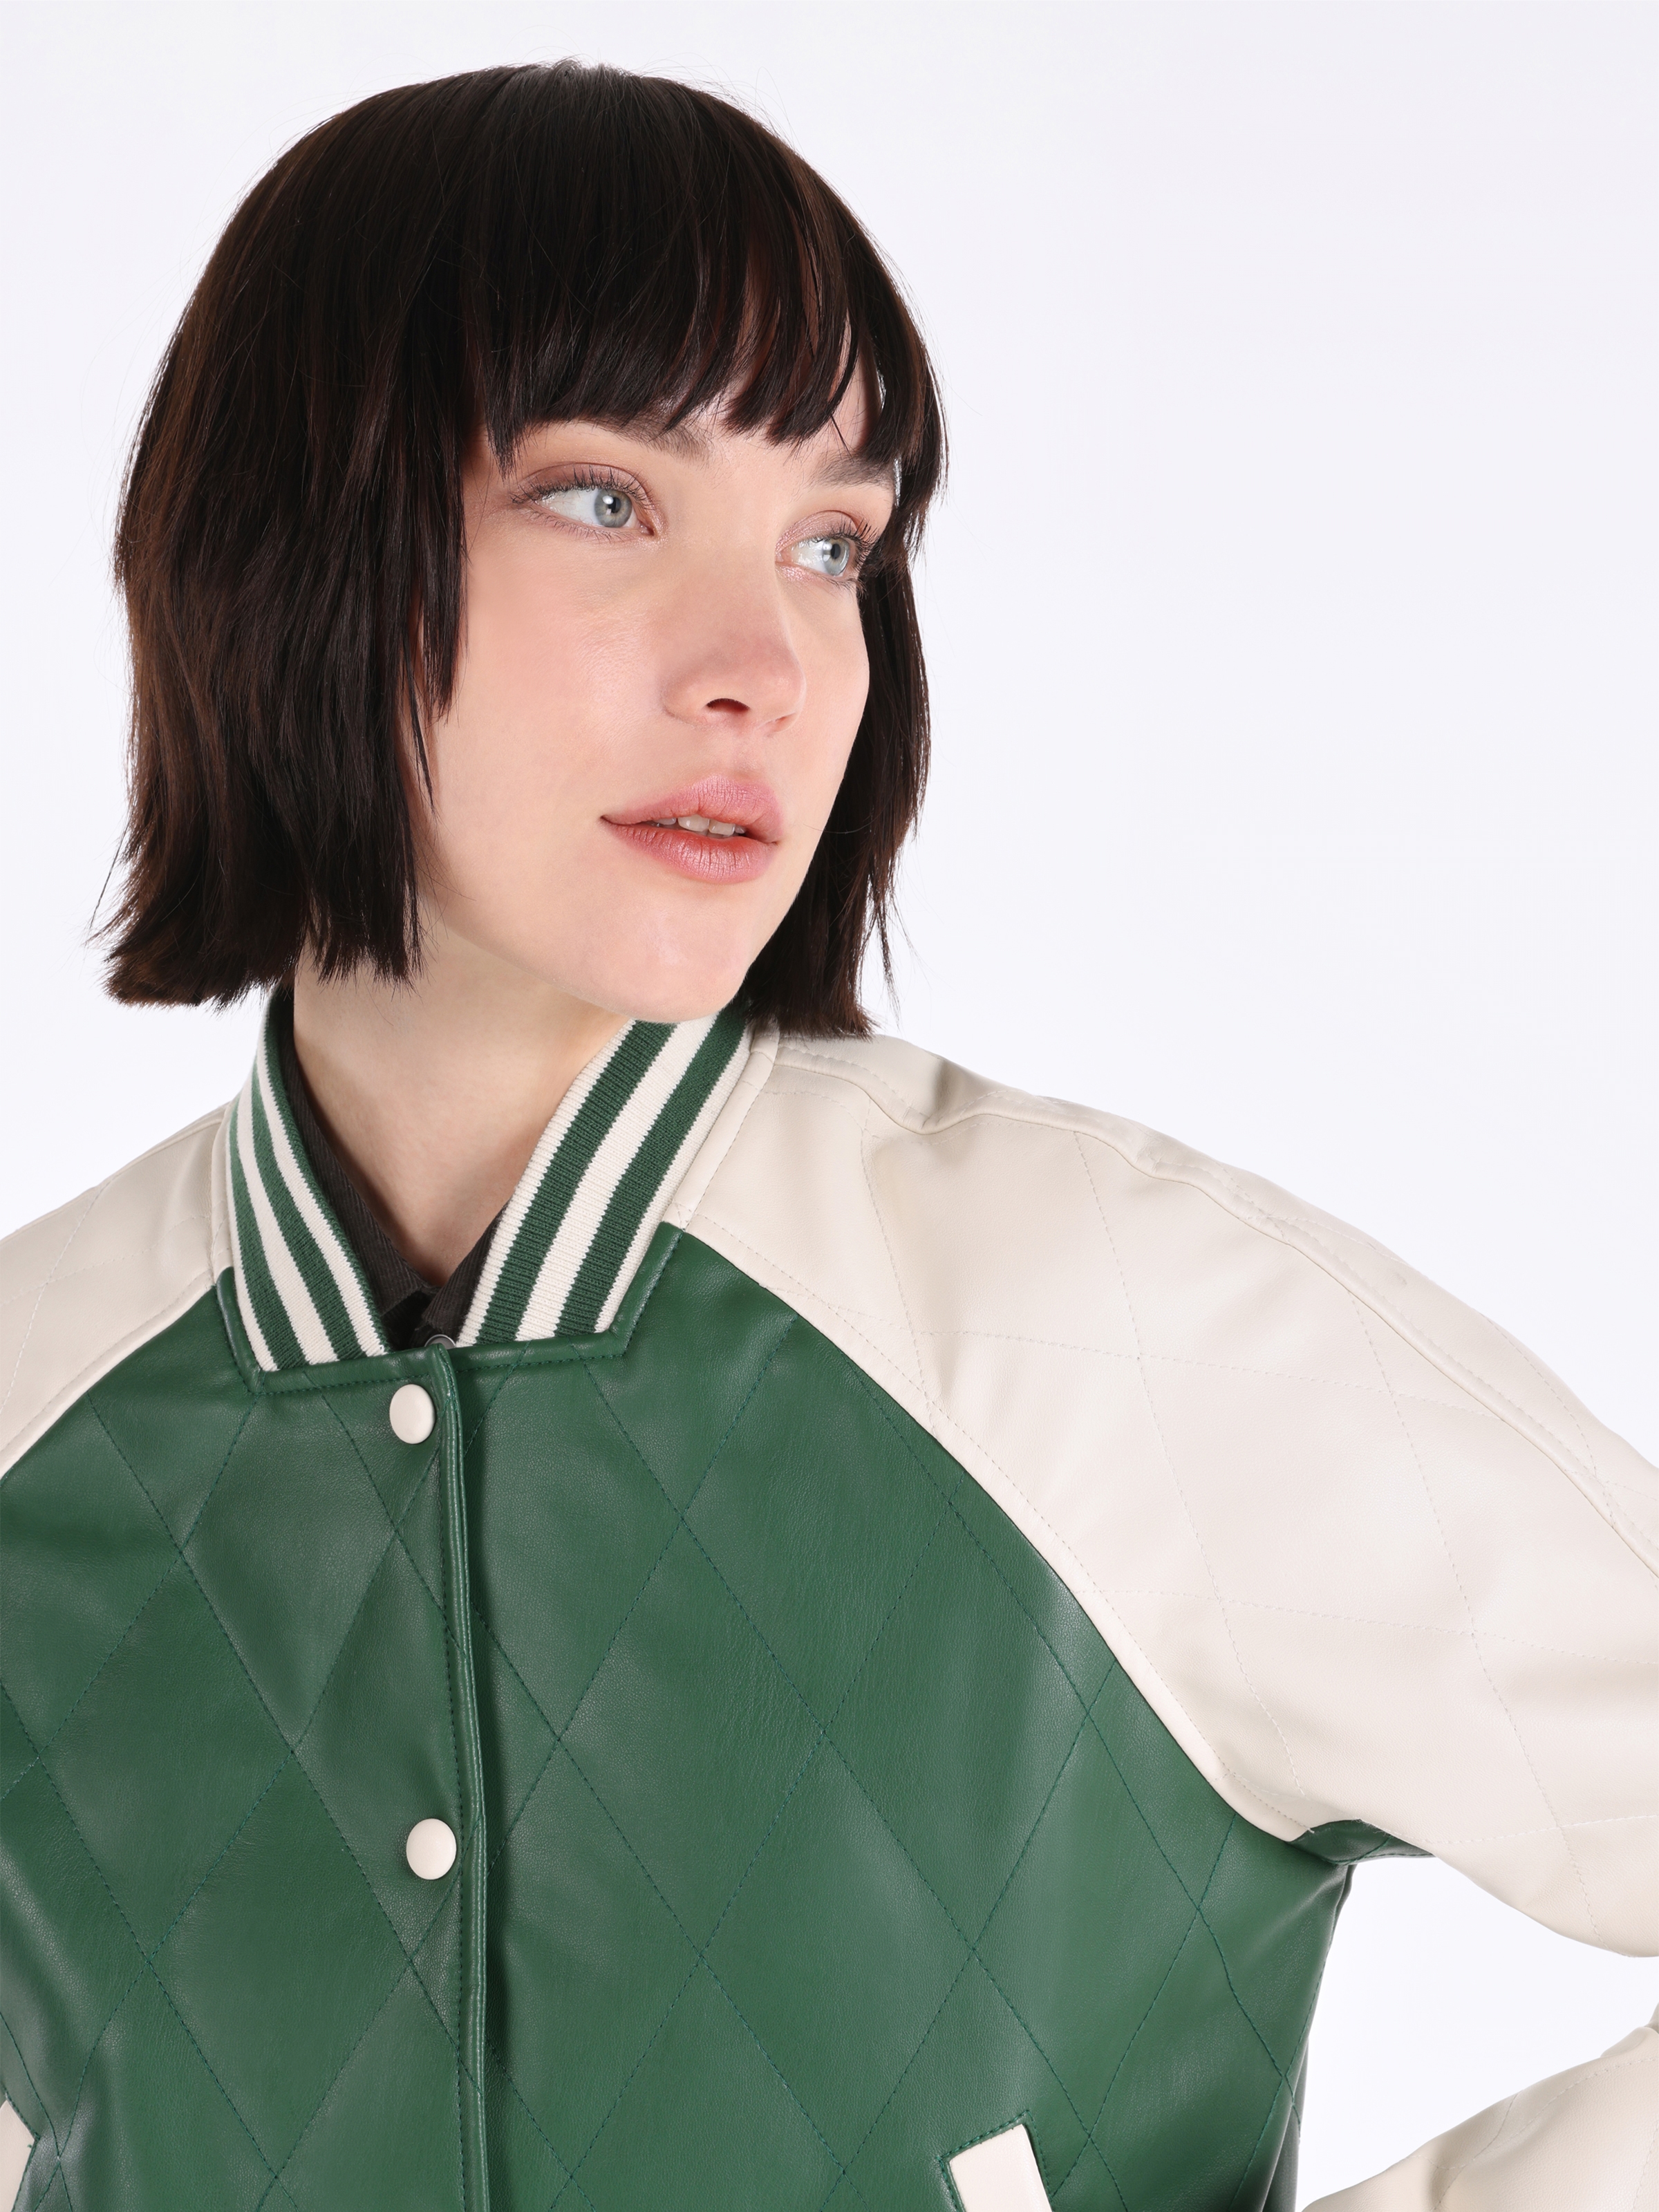 Показати інформацію про  Куртка з еко-шкіри Жіноча Зелена  